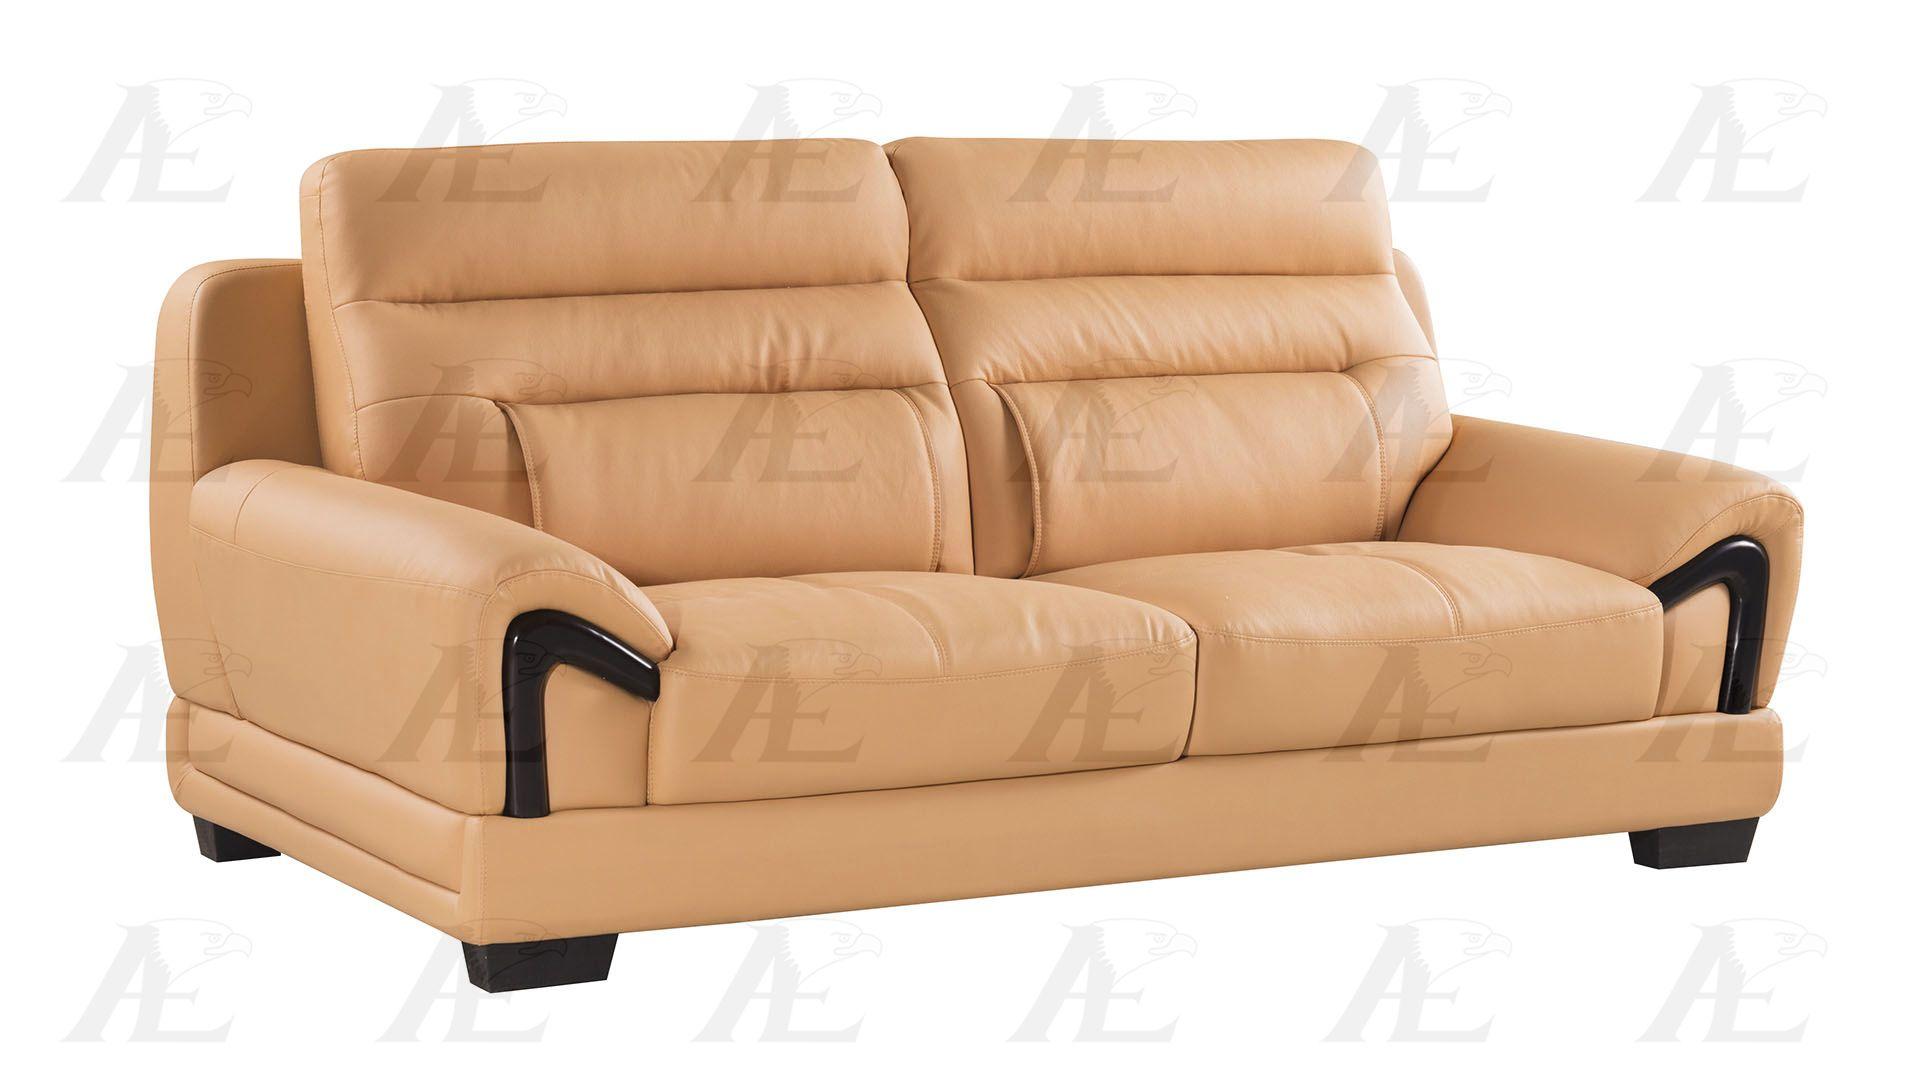 

    
American Eagle Furniture EK-B120-YO Sofa Loveseat and Chair Set Yellow EK-B120-YO Set-3
